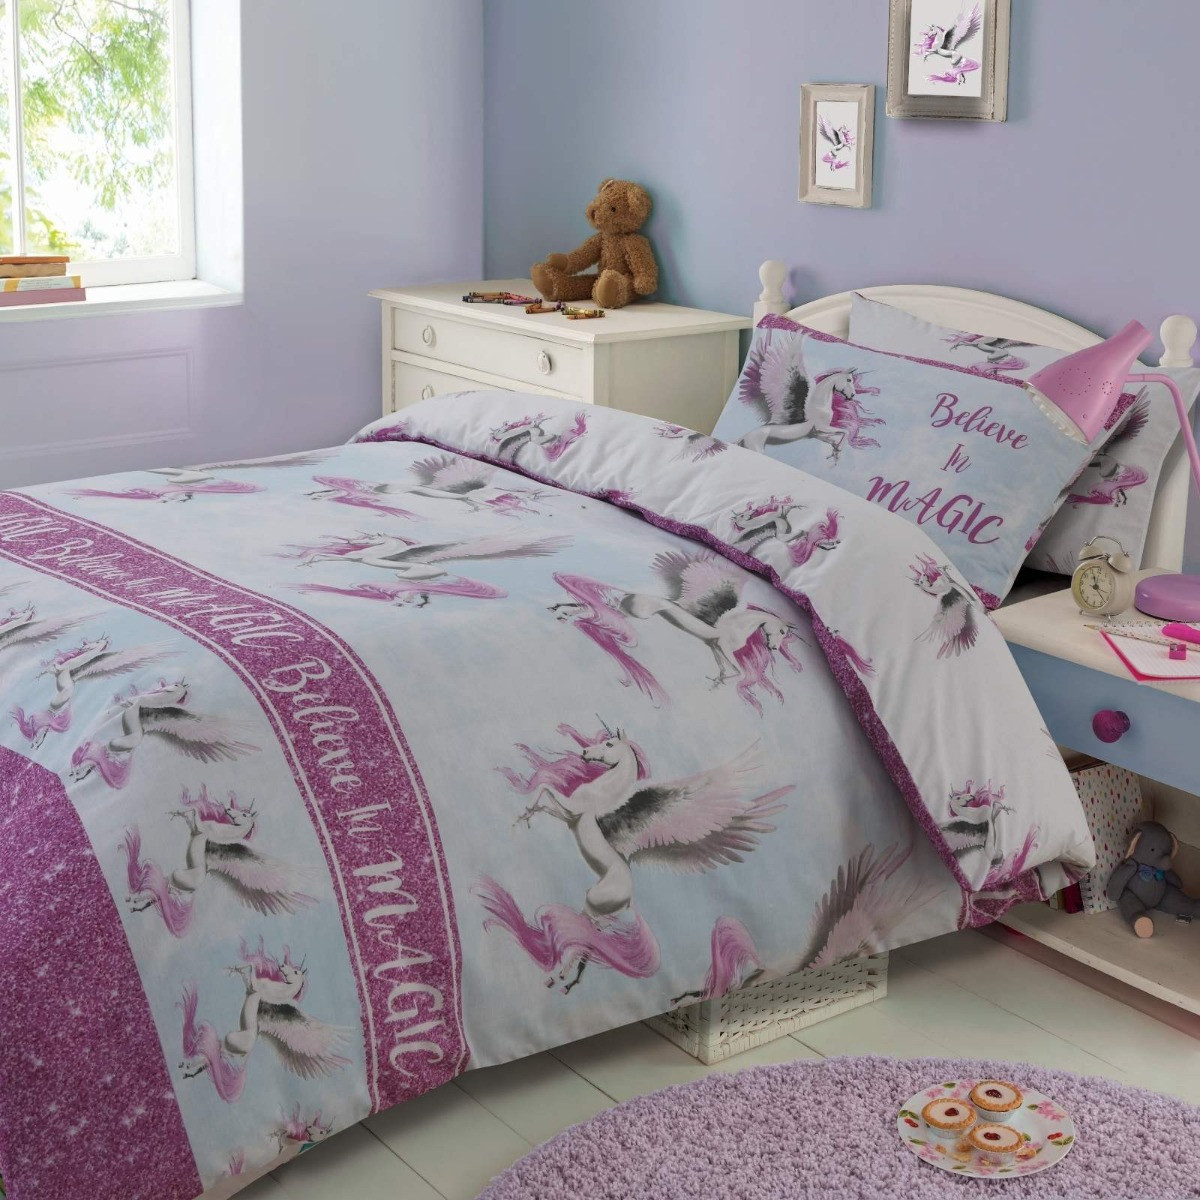 Dreamscene Flying Unicorn Duvet Cover with Pillowcase Reversible Kids Girl Fairy Bedding Set, Pink Blue White - Single>